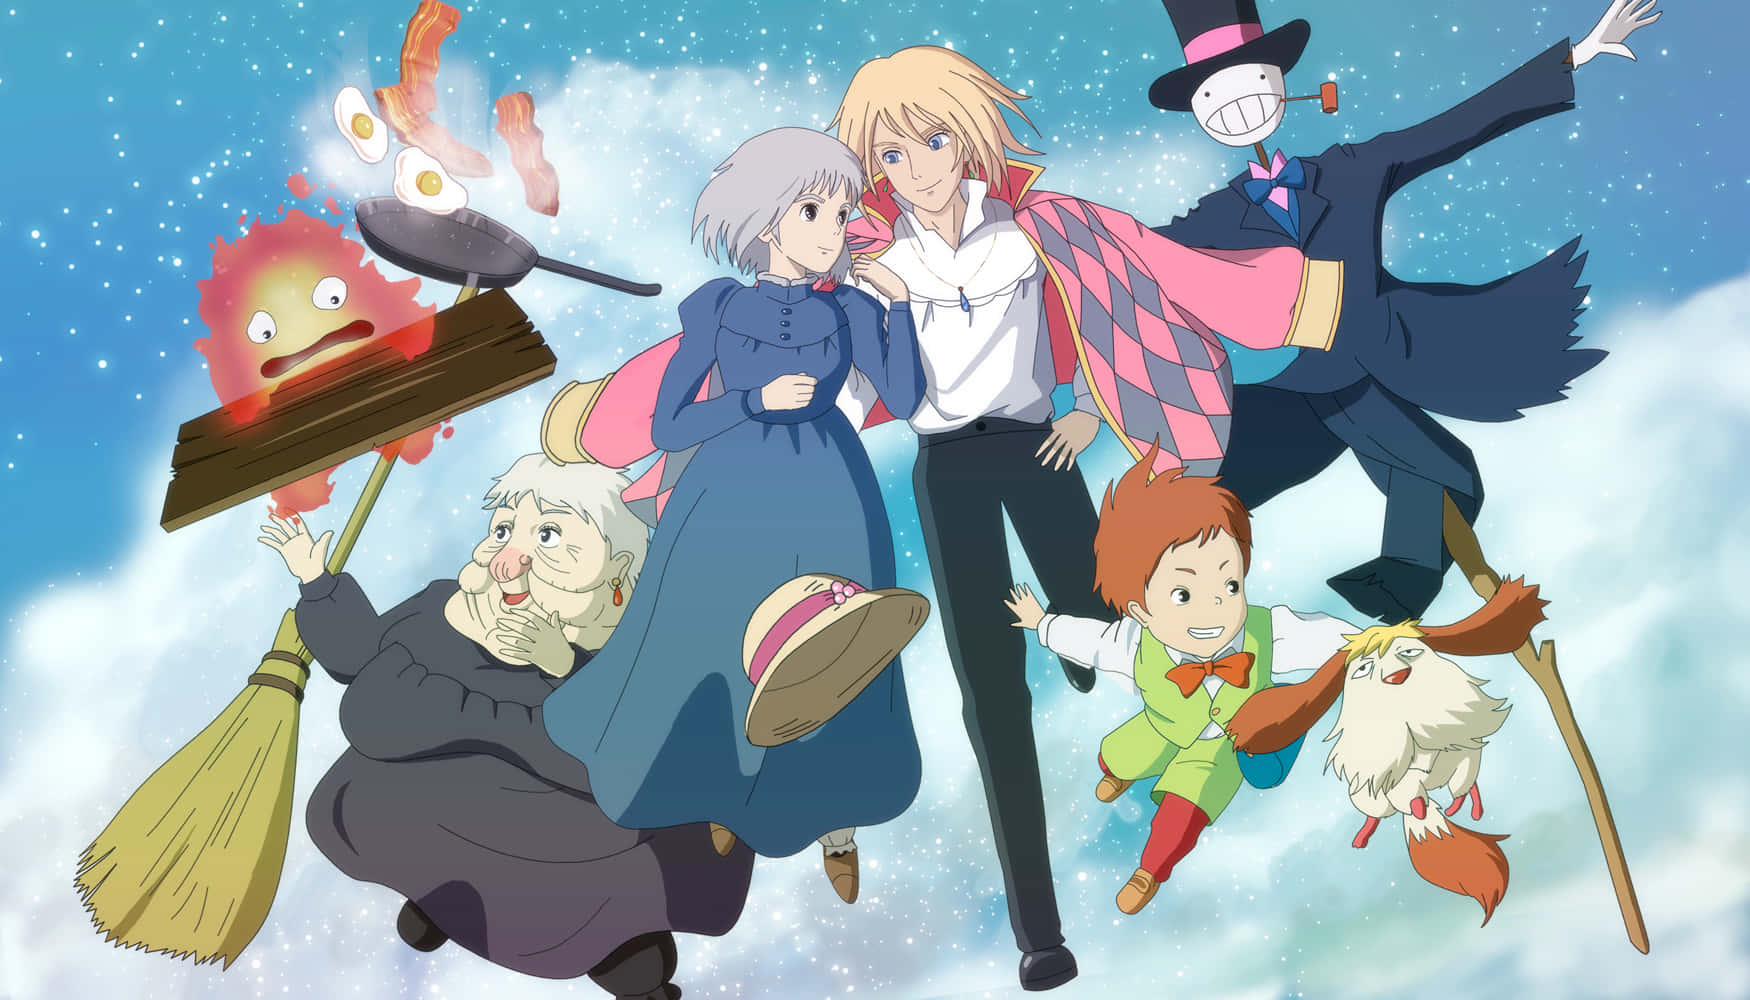 Einegruppe Von Menschen In Einem Anime Mit Einem Besen.